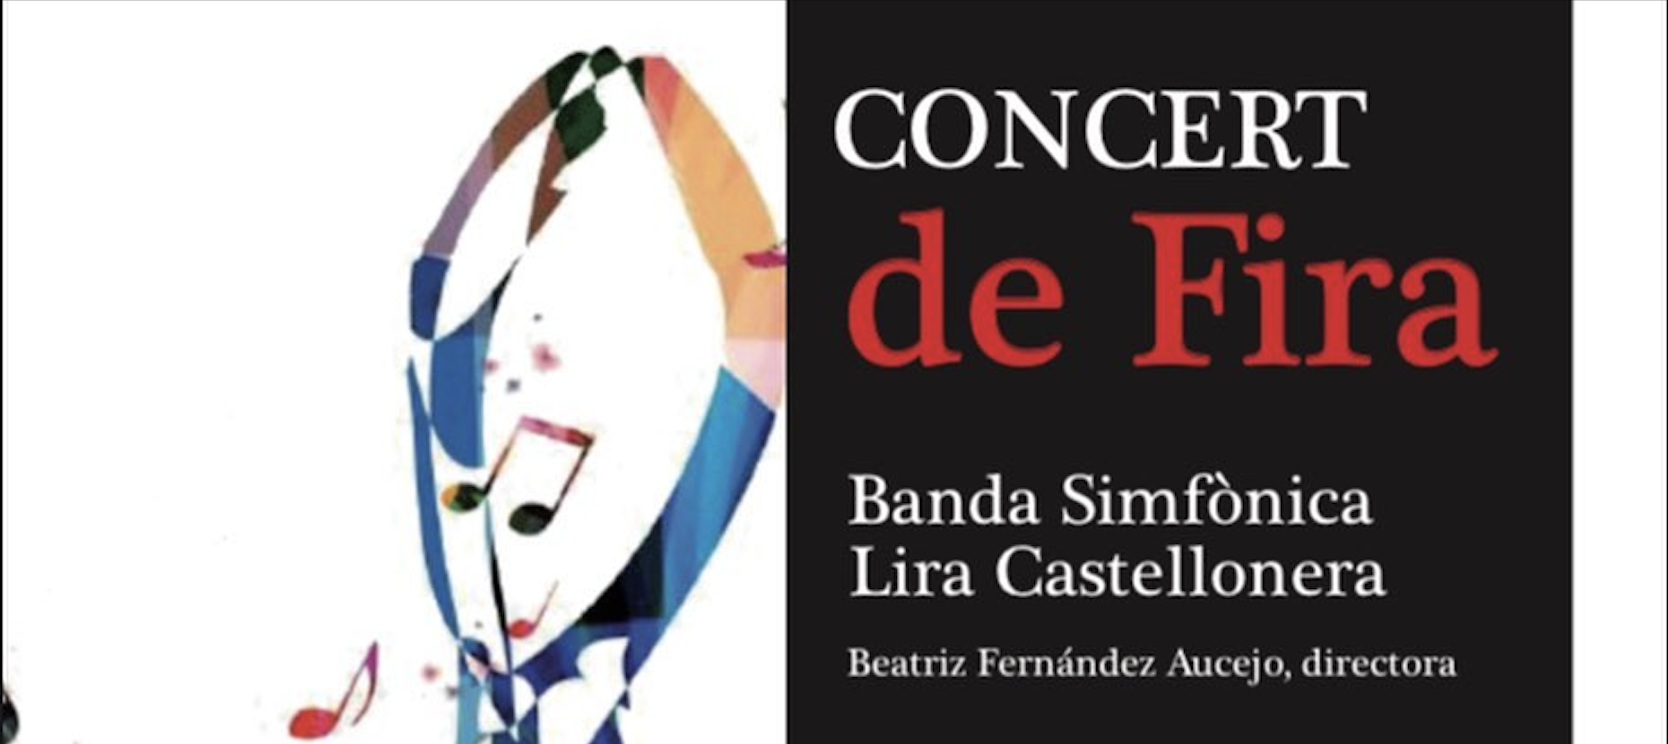 Concert de Fira de la Banda Simfònica de la Societat Musical Lira Castellonera